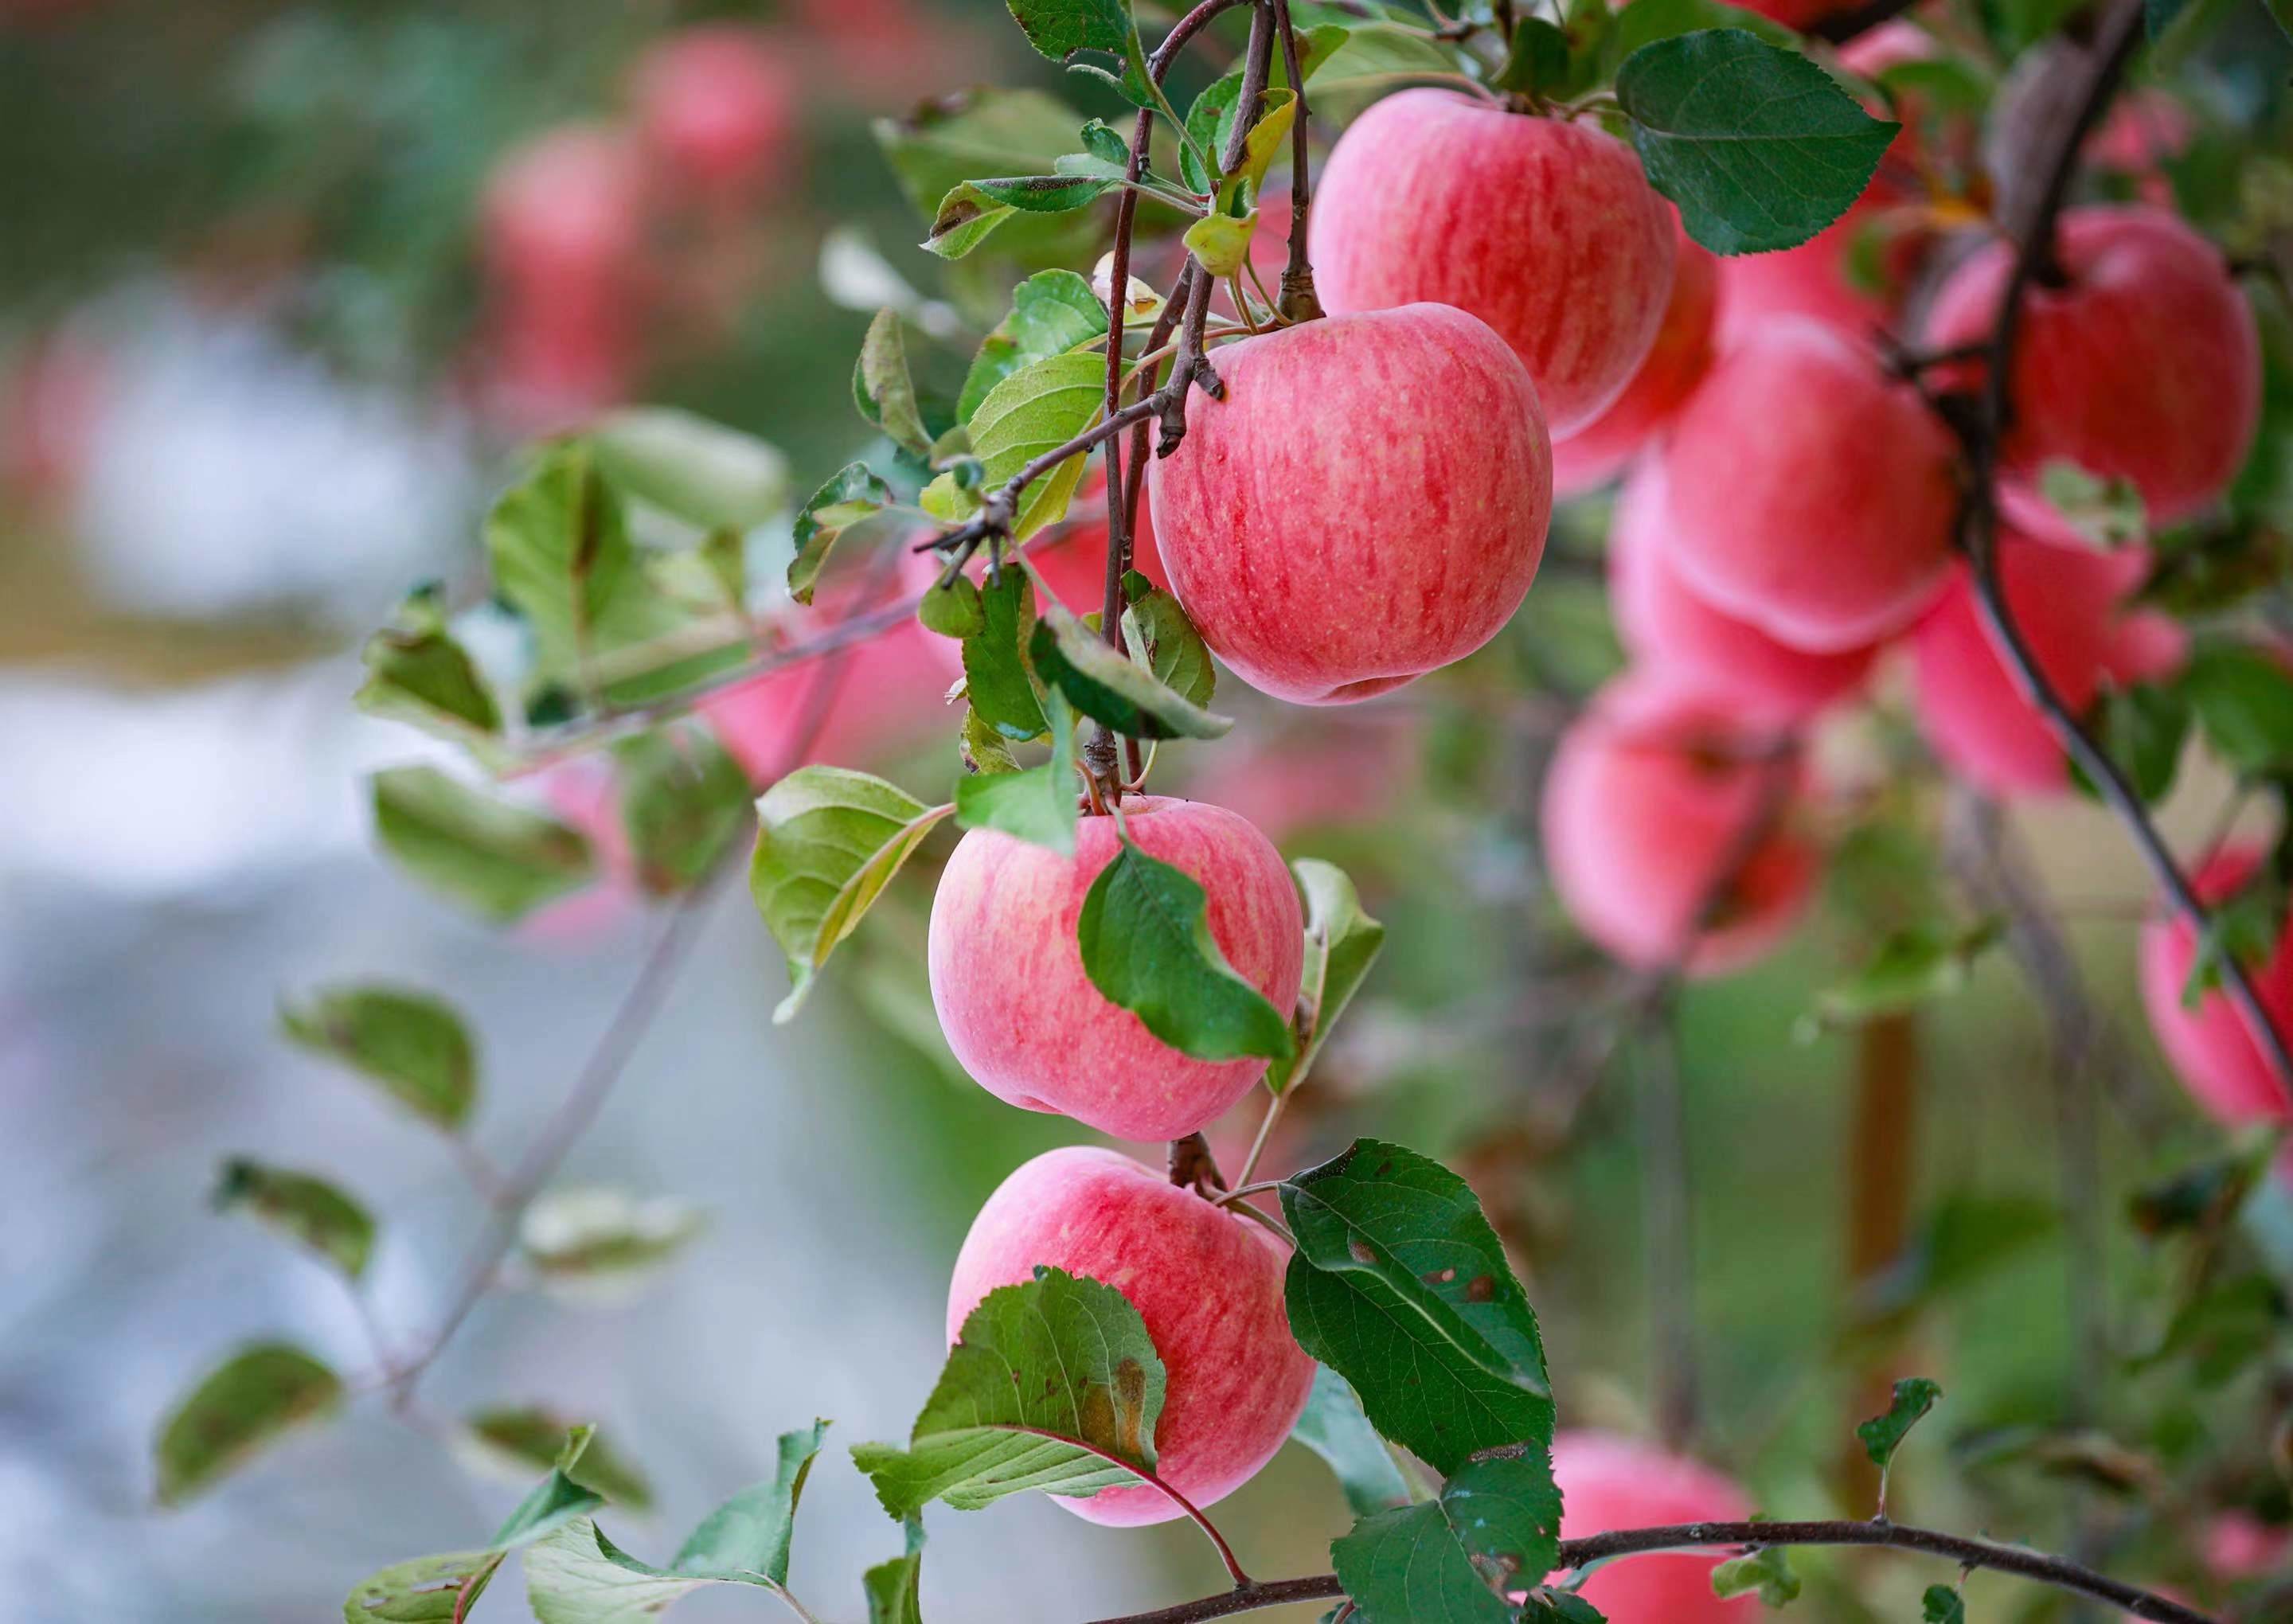 苹果是蔷薇科苹果亚科苹果属植物，其树为落叶乔木。苹果营养价值很高，富含矿物质和维生素，含钙量丰富，有助于代谢掉体内多余盐分，苹果酸可代谢热量，防止下半身肥胖。